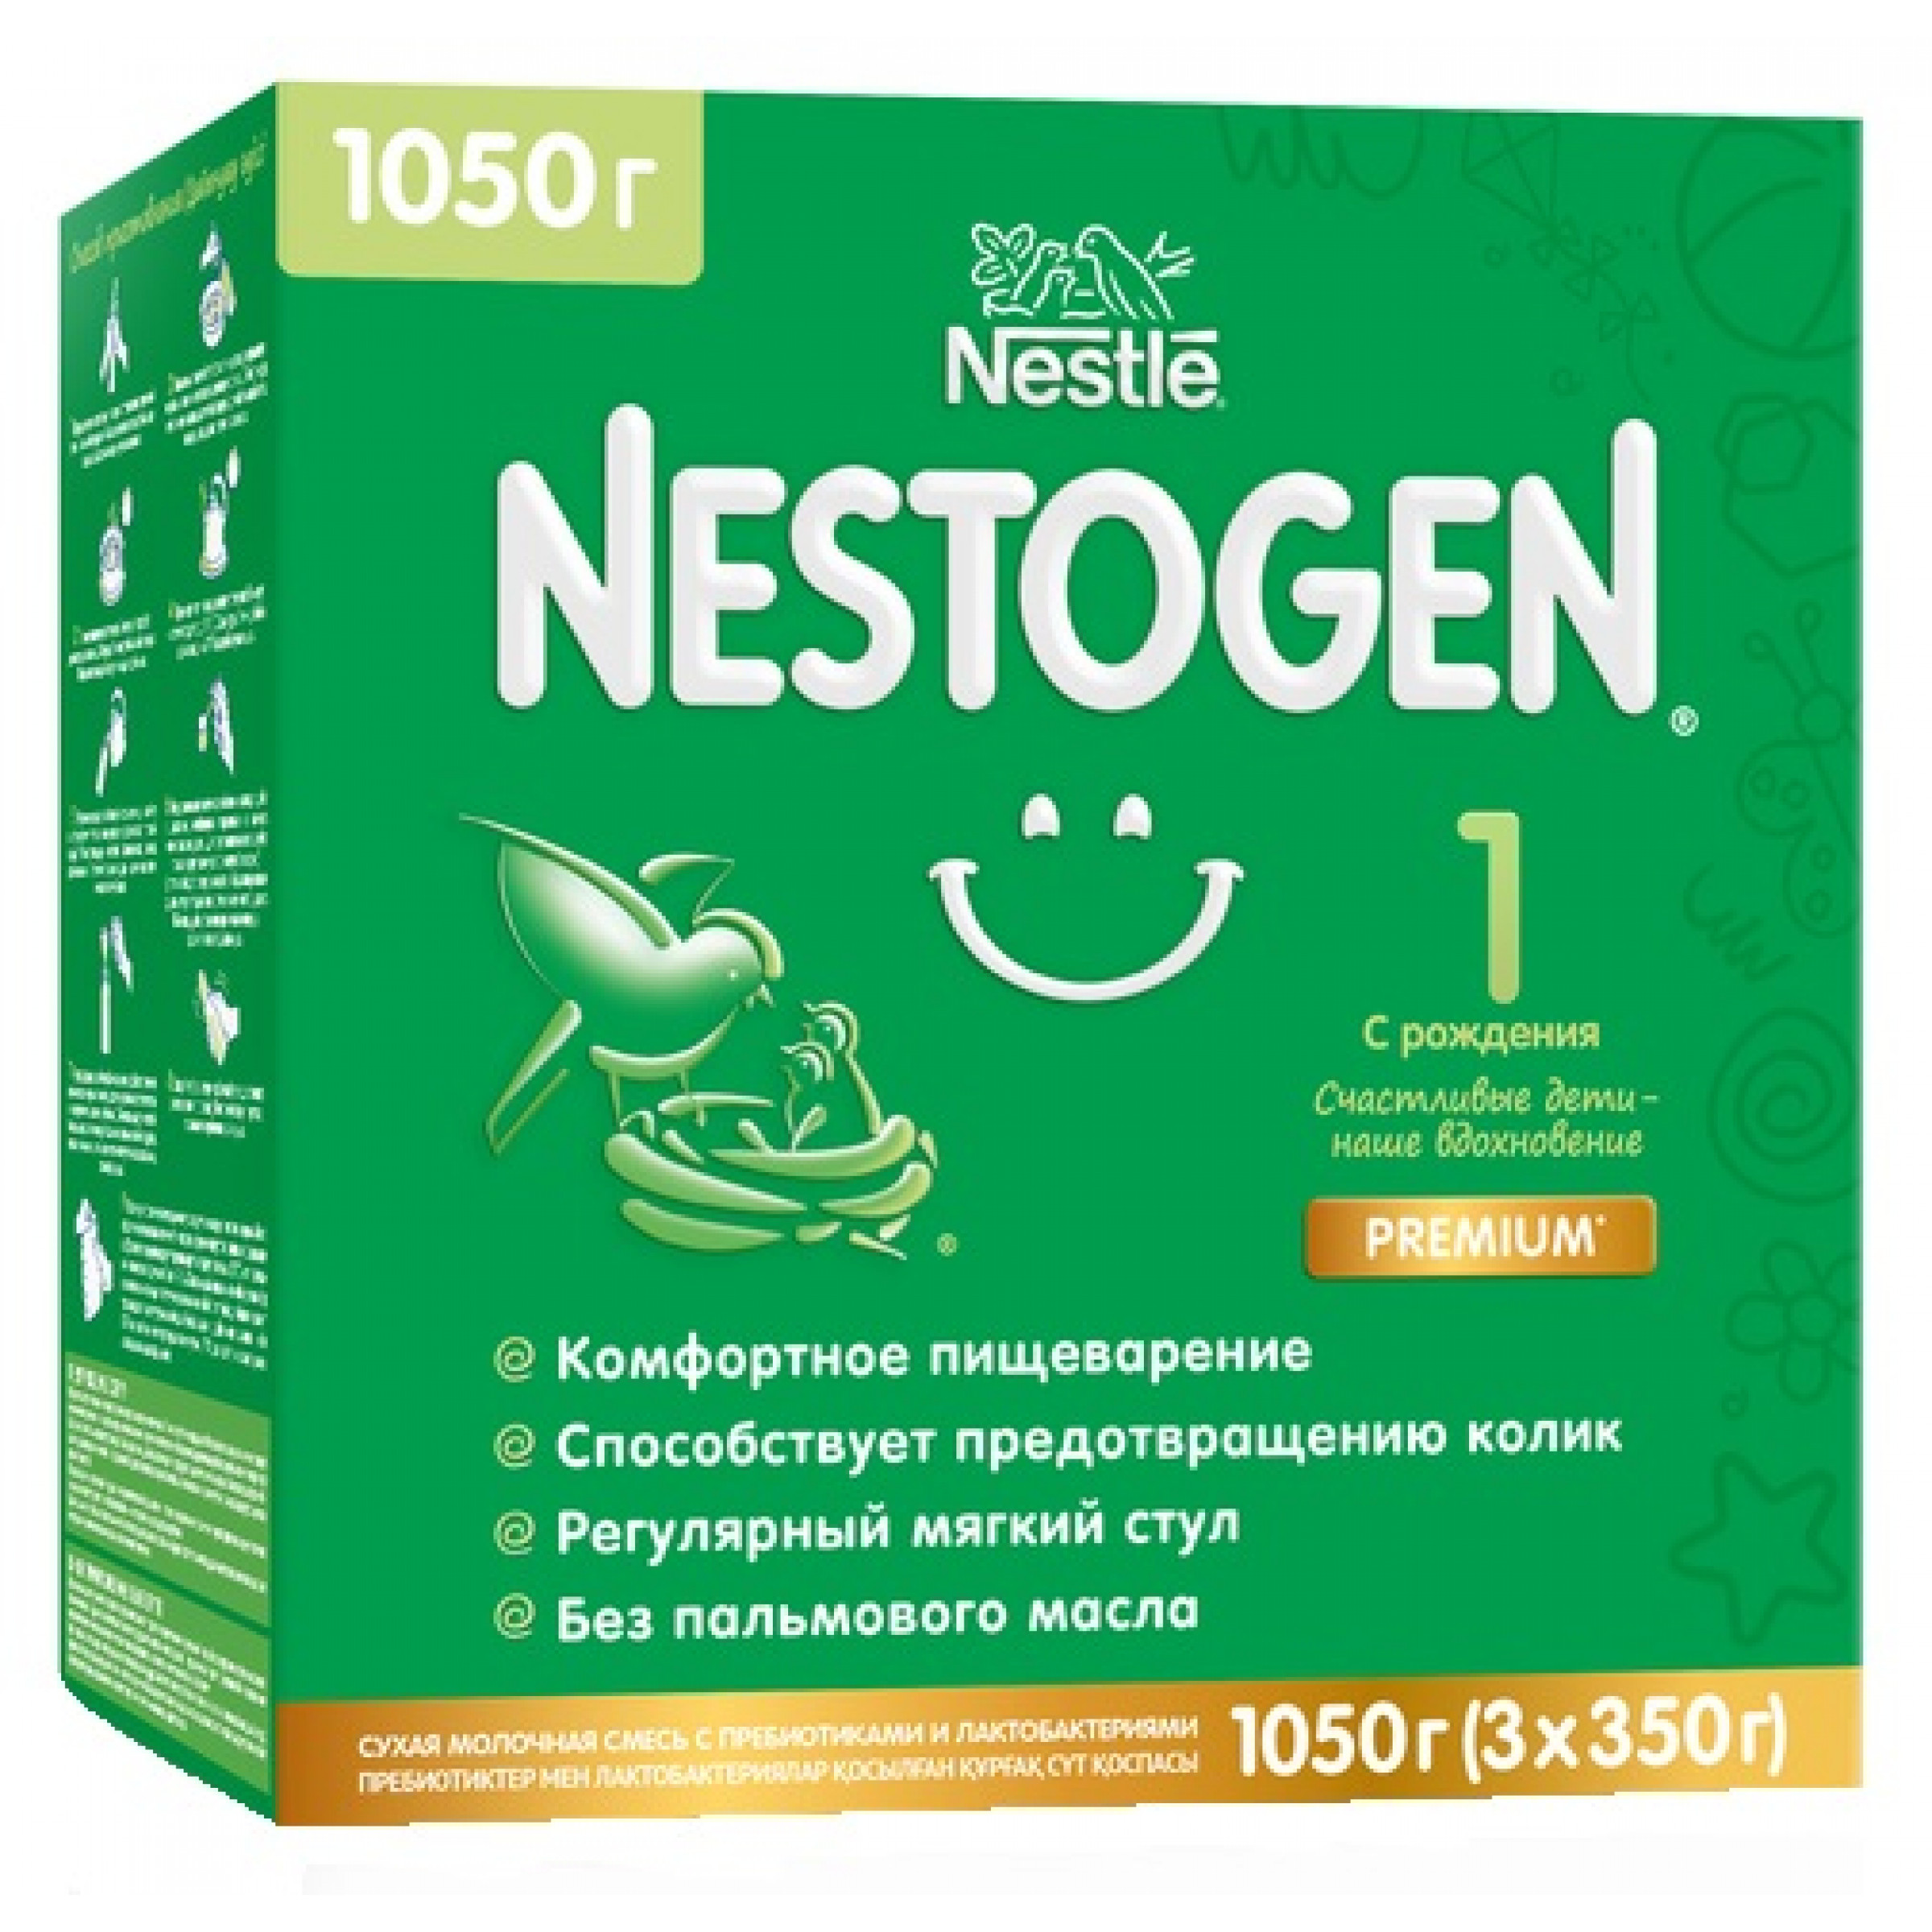 Сухая молочная смесь с пребиотиками и лактобактериями 0-6 месяцев Nestogen 1 1050 г Nestle